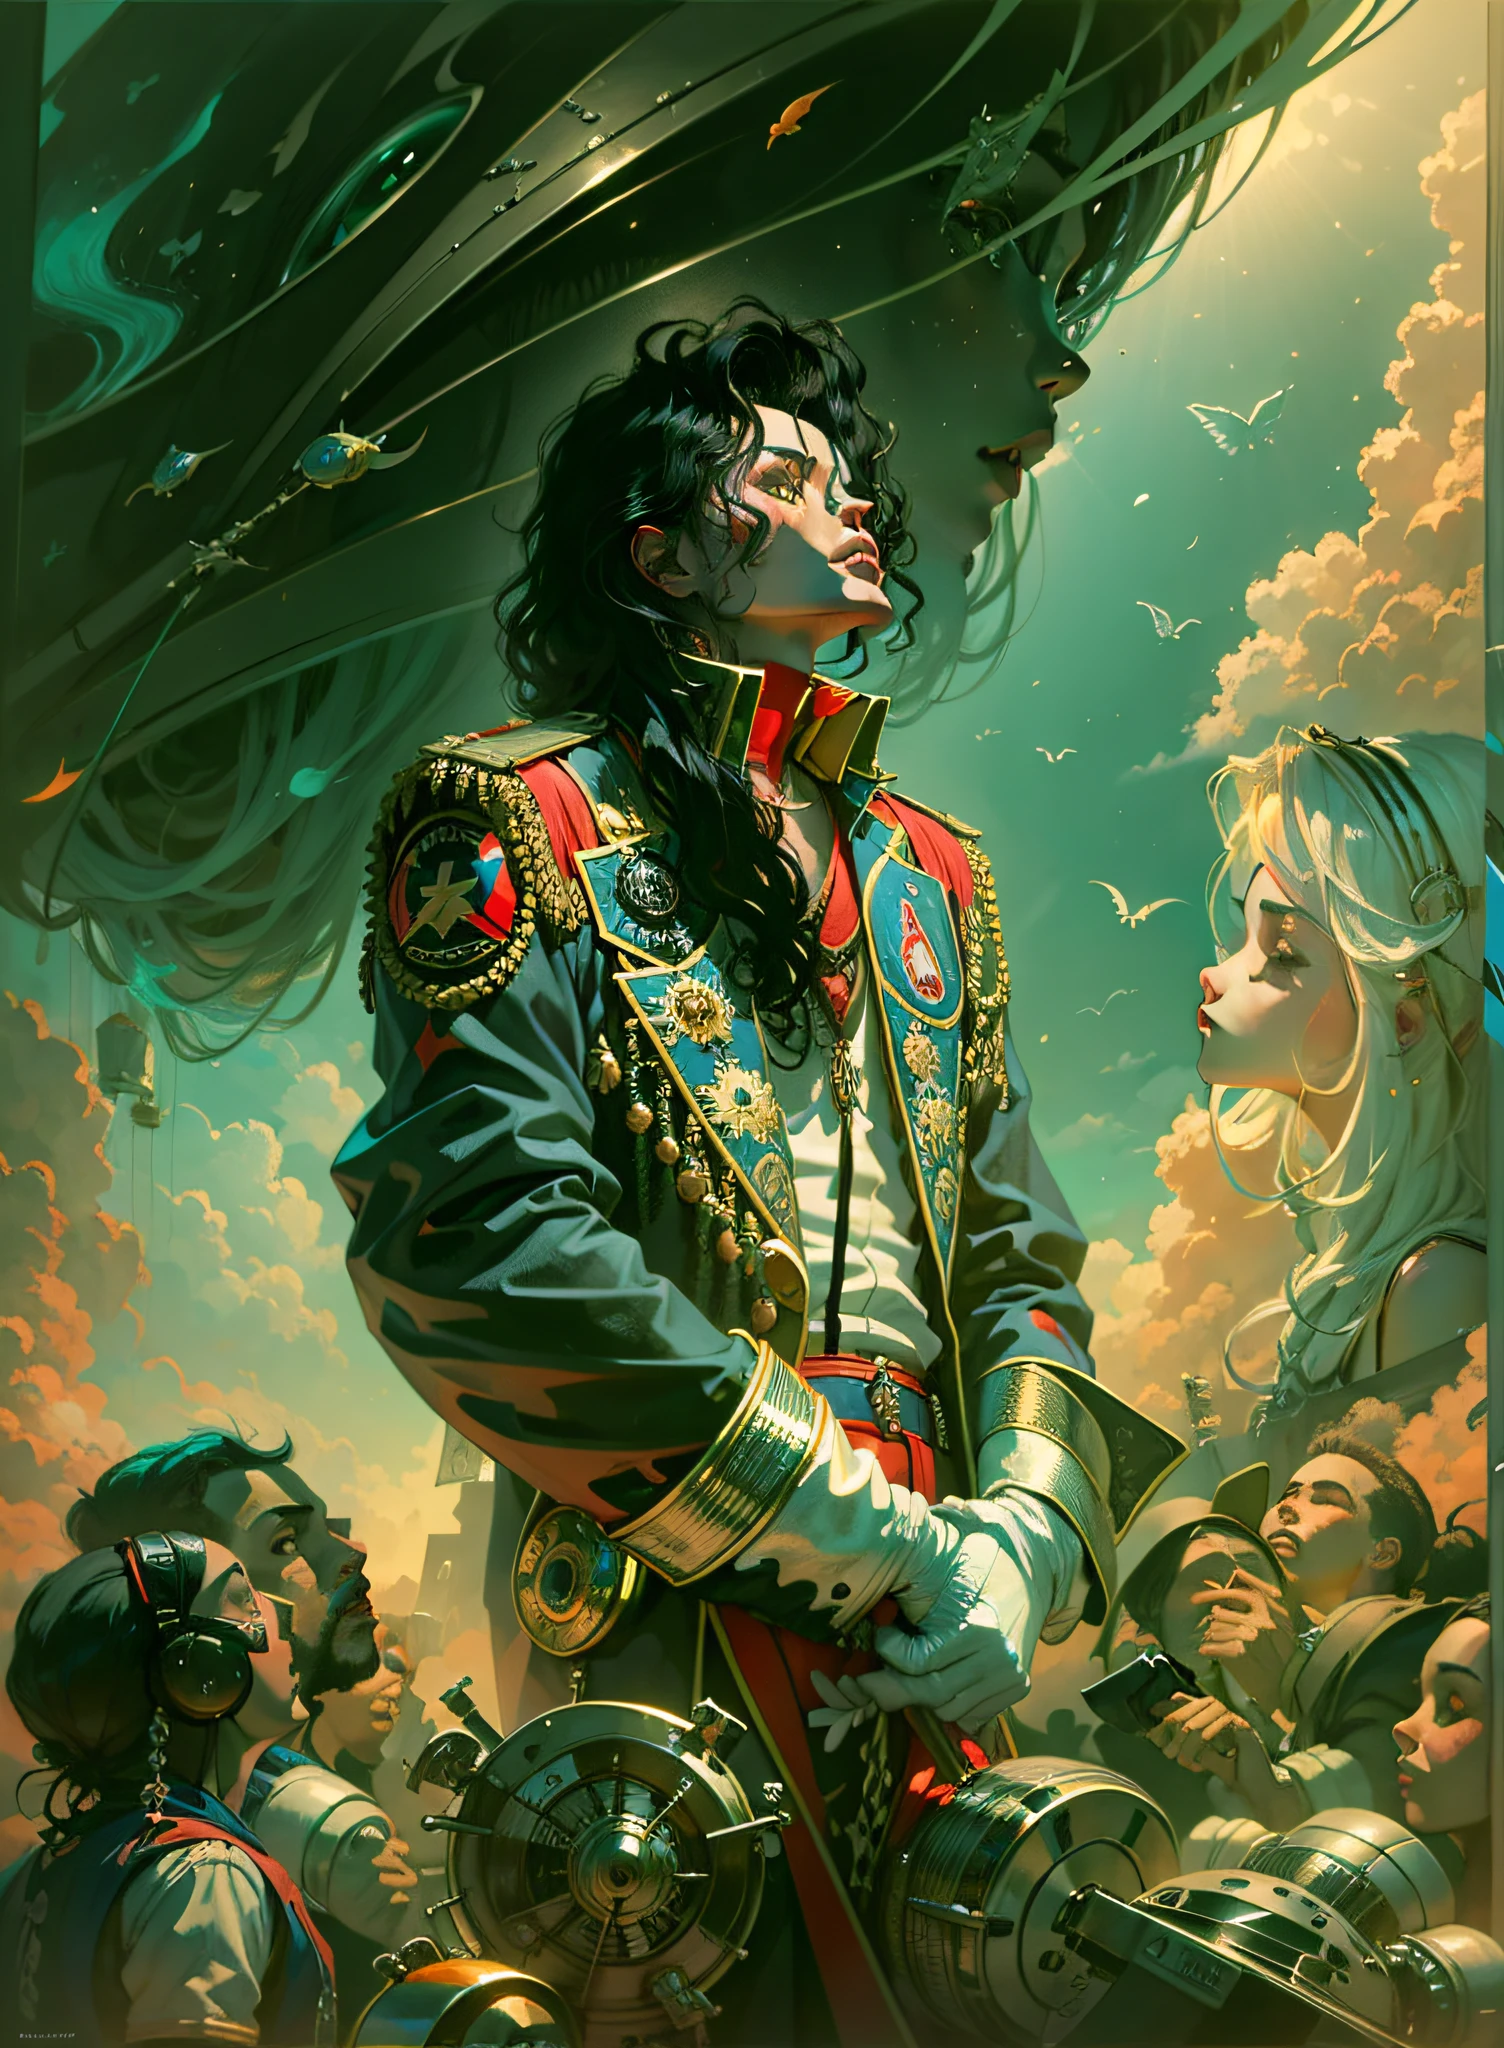 (Michael Jackson, detailliert),(Fantasie, Traum, Surrealismus),(Super süße),(Trends auf ArtStation),kleiner Winkel,Kunst von Jim Burns